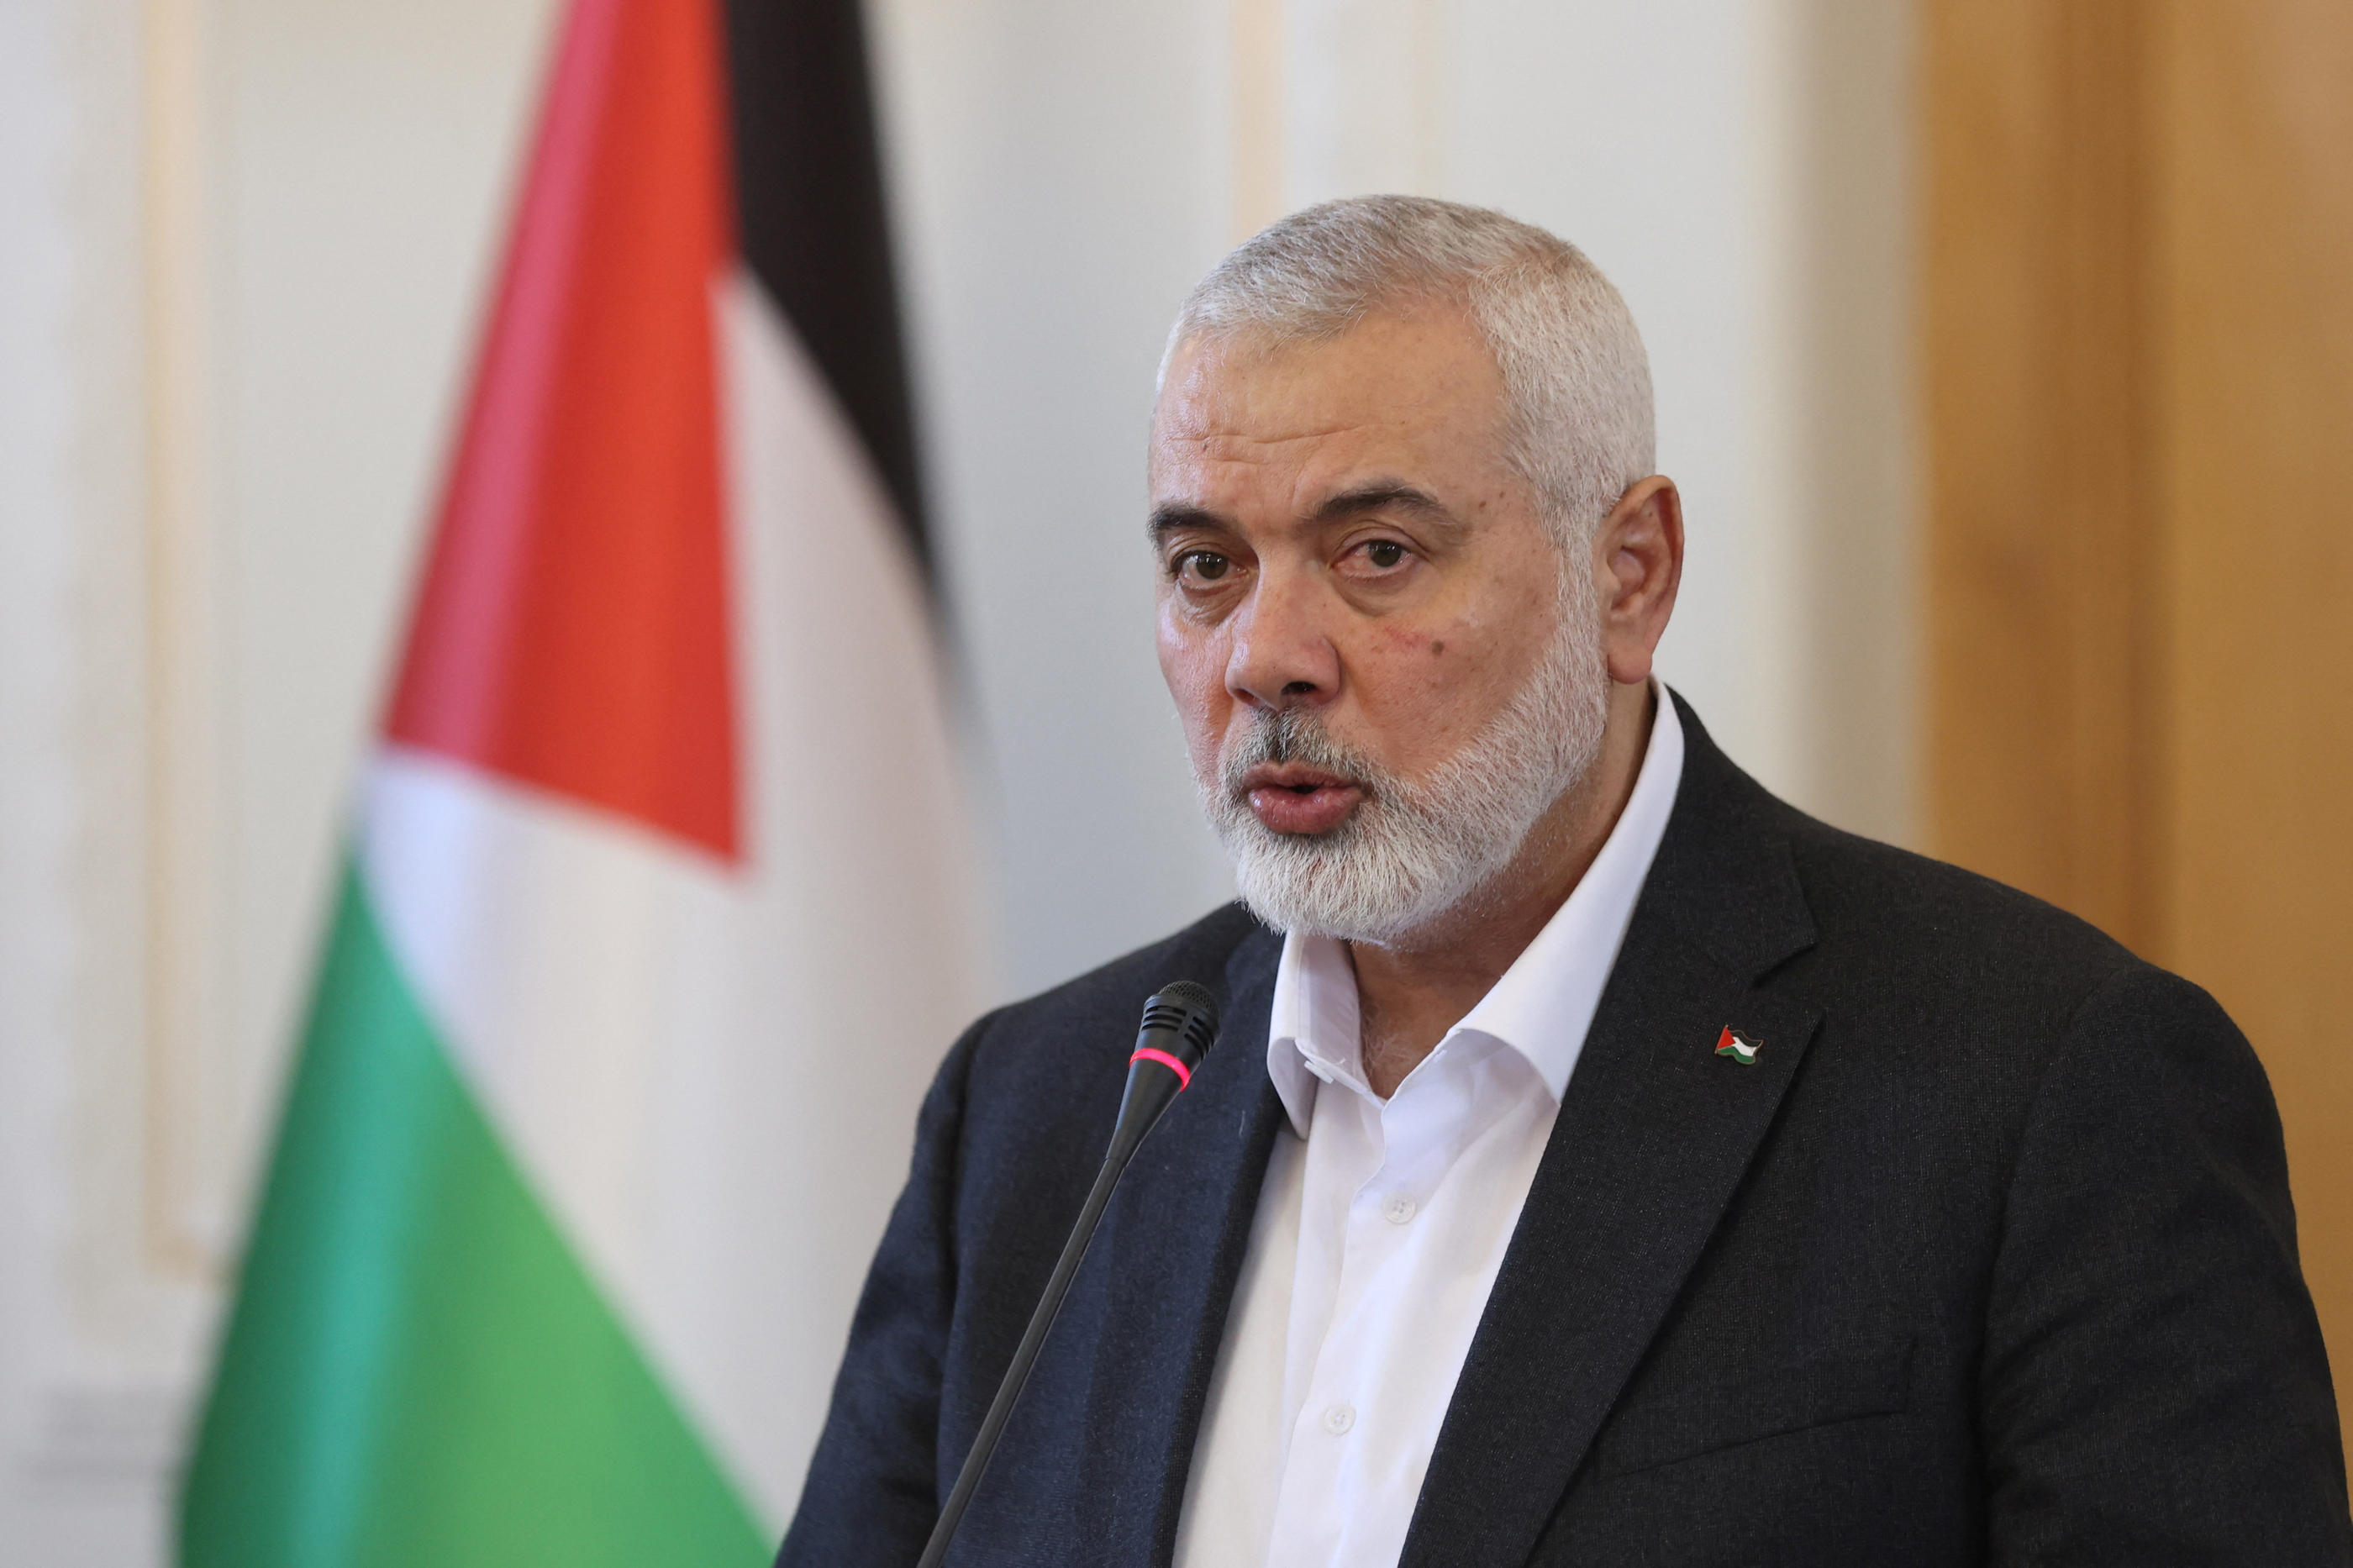 Le chef du bureau politique du Hamas, Ismaïl Haniyeh, suit de près ces négociations. REUTERS / Majid Asgaripour